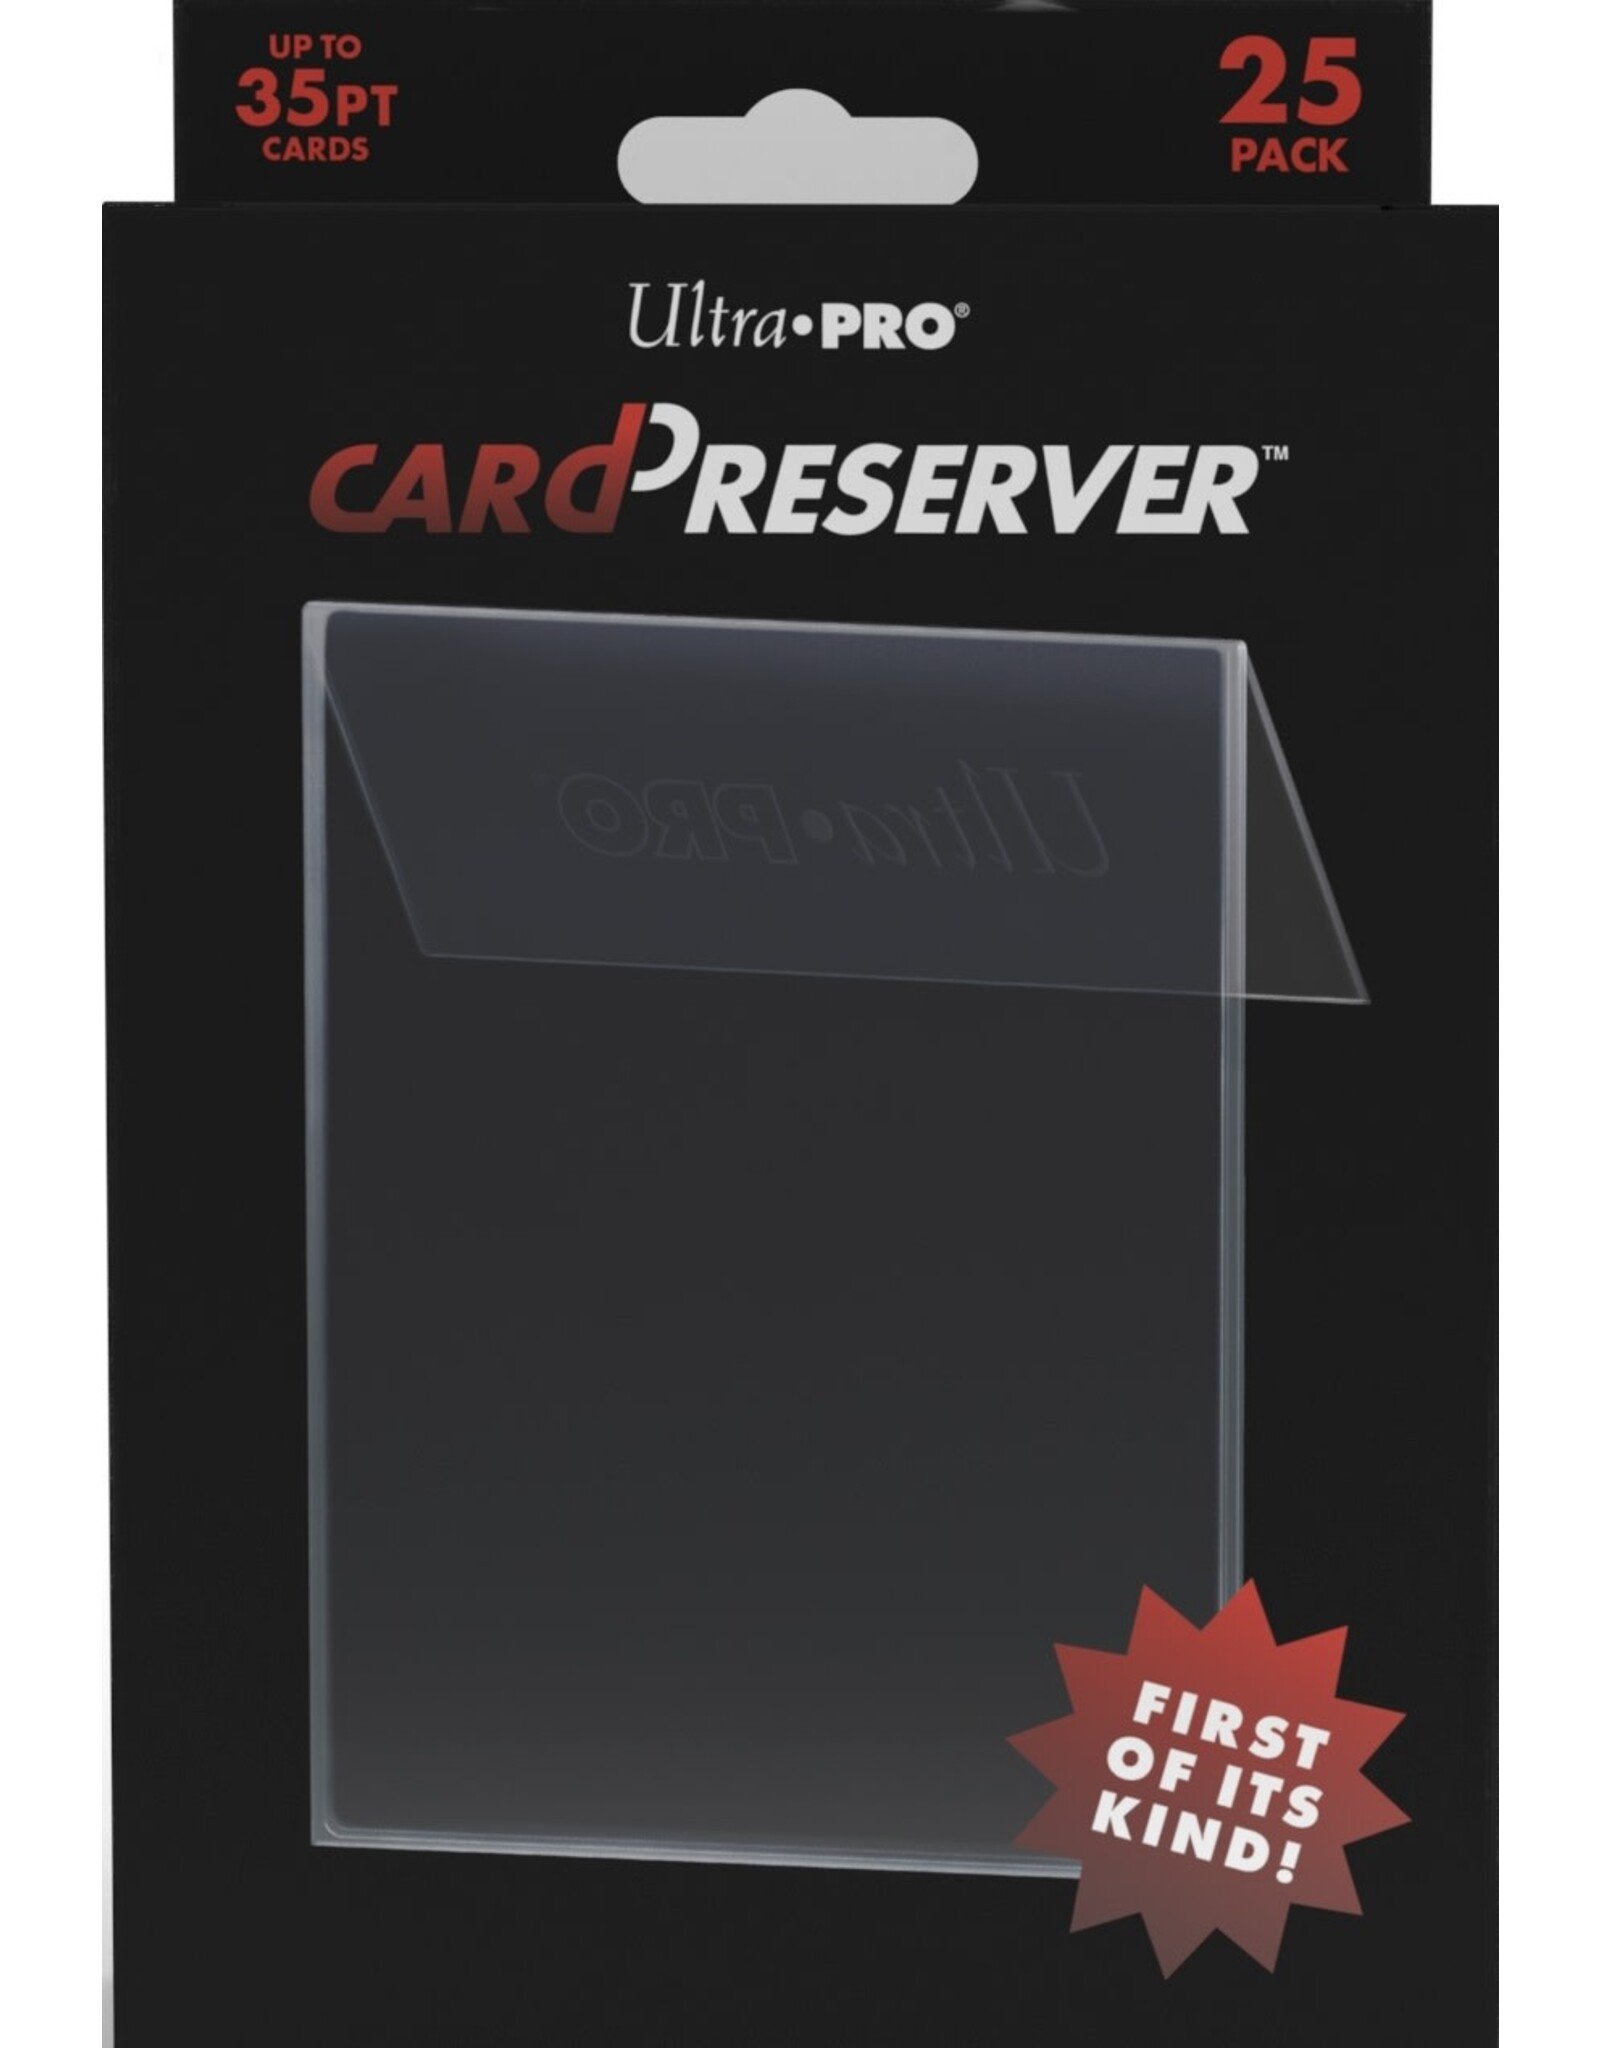 UP Card Preserver 35pt 25 pack